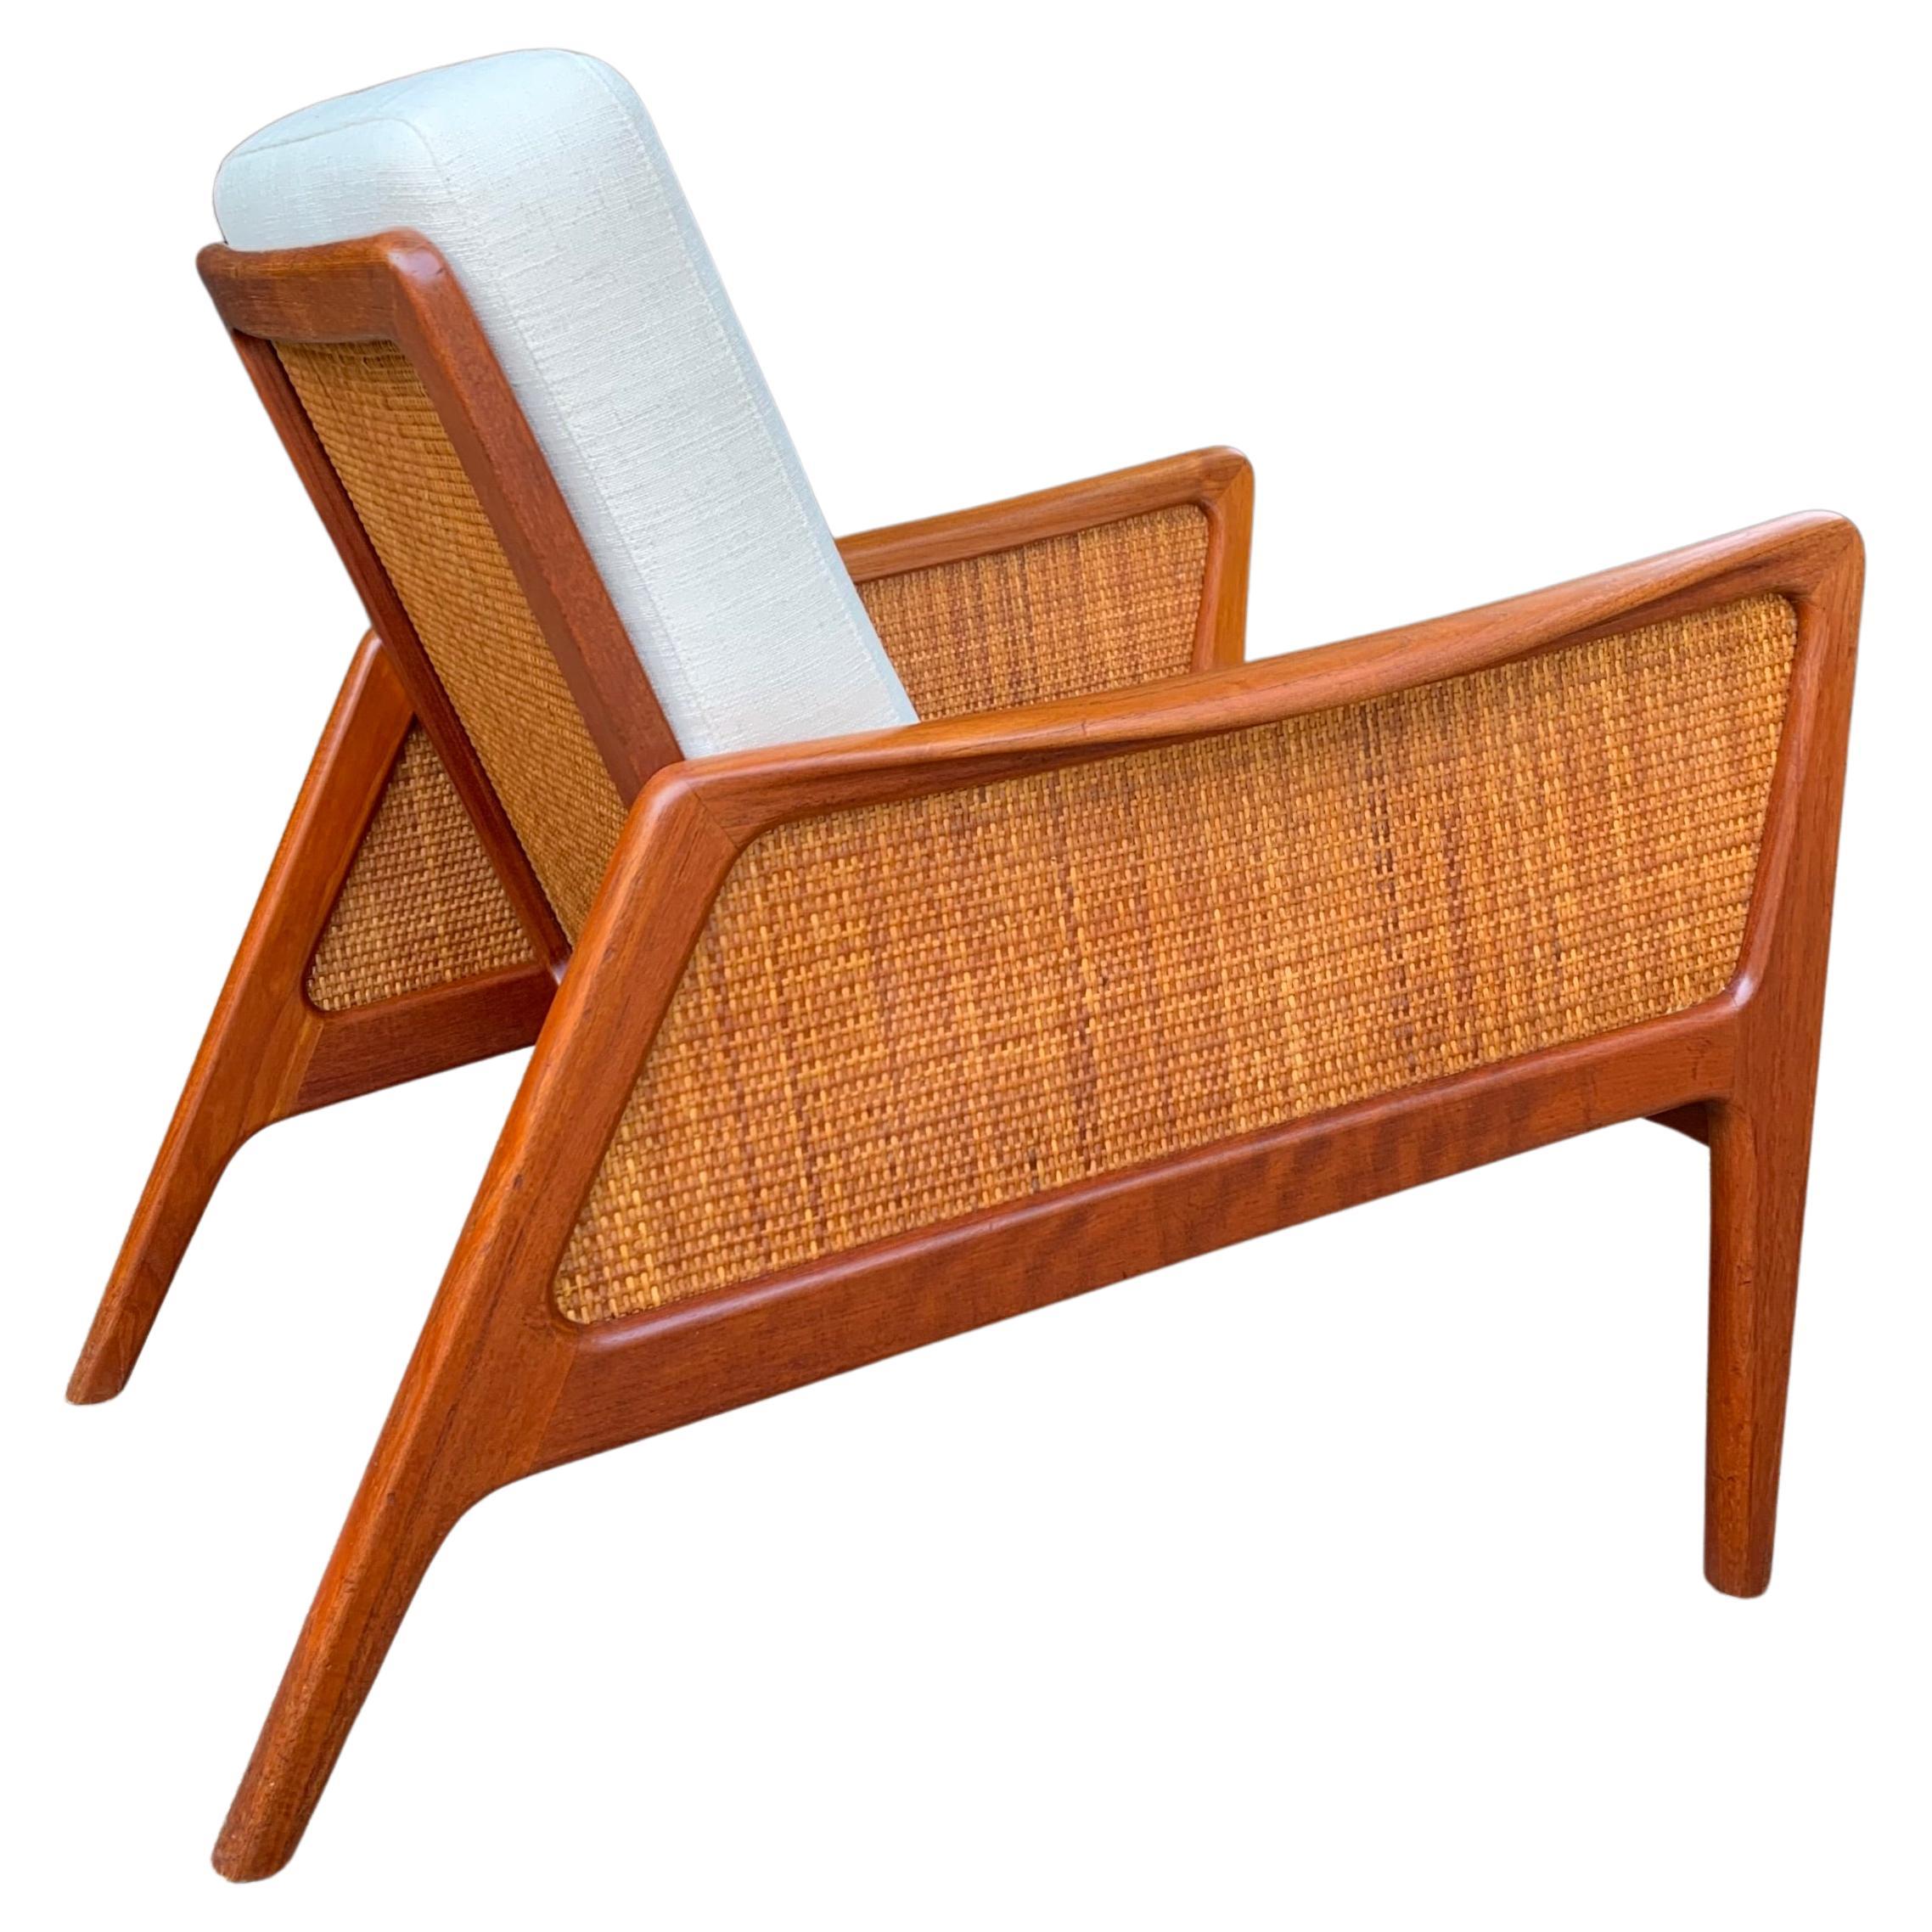 Cane & Teak Lounge Chair Peter Hvidt & Orla Molgaard-Nielsen France & Daverkosen For Sale